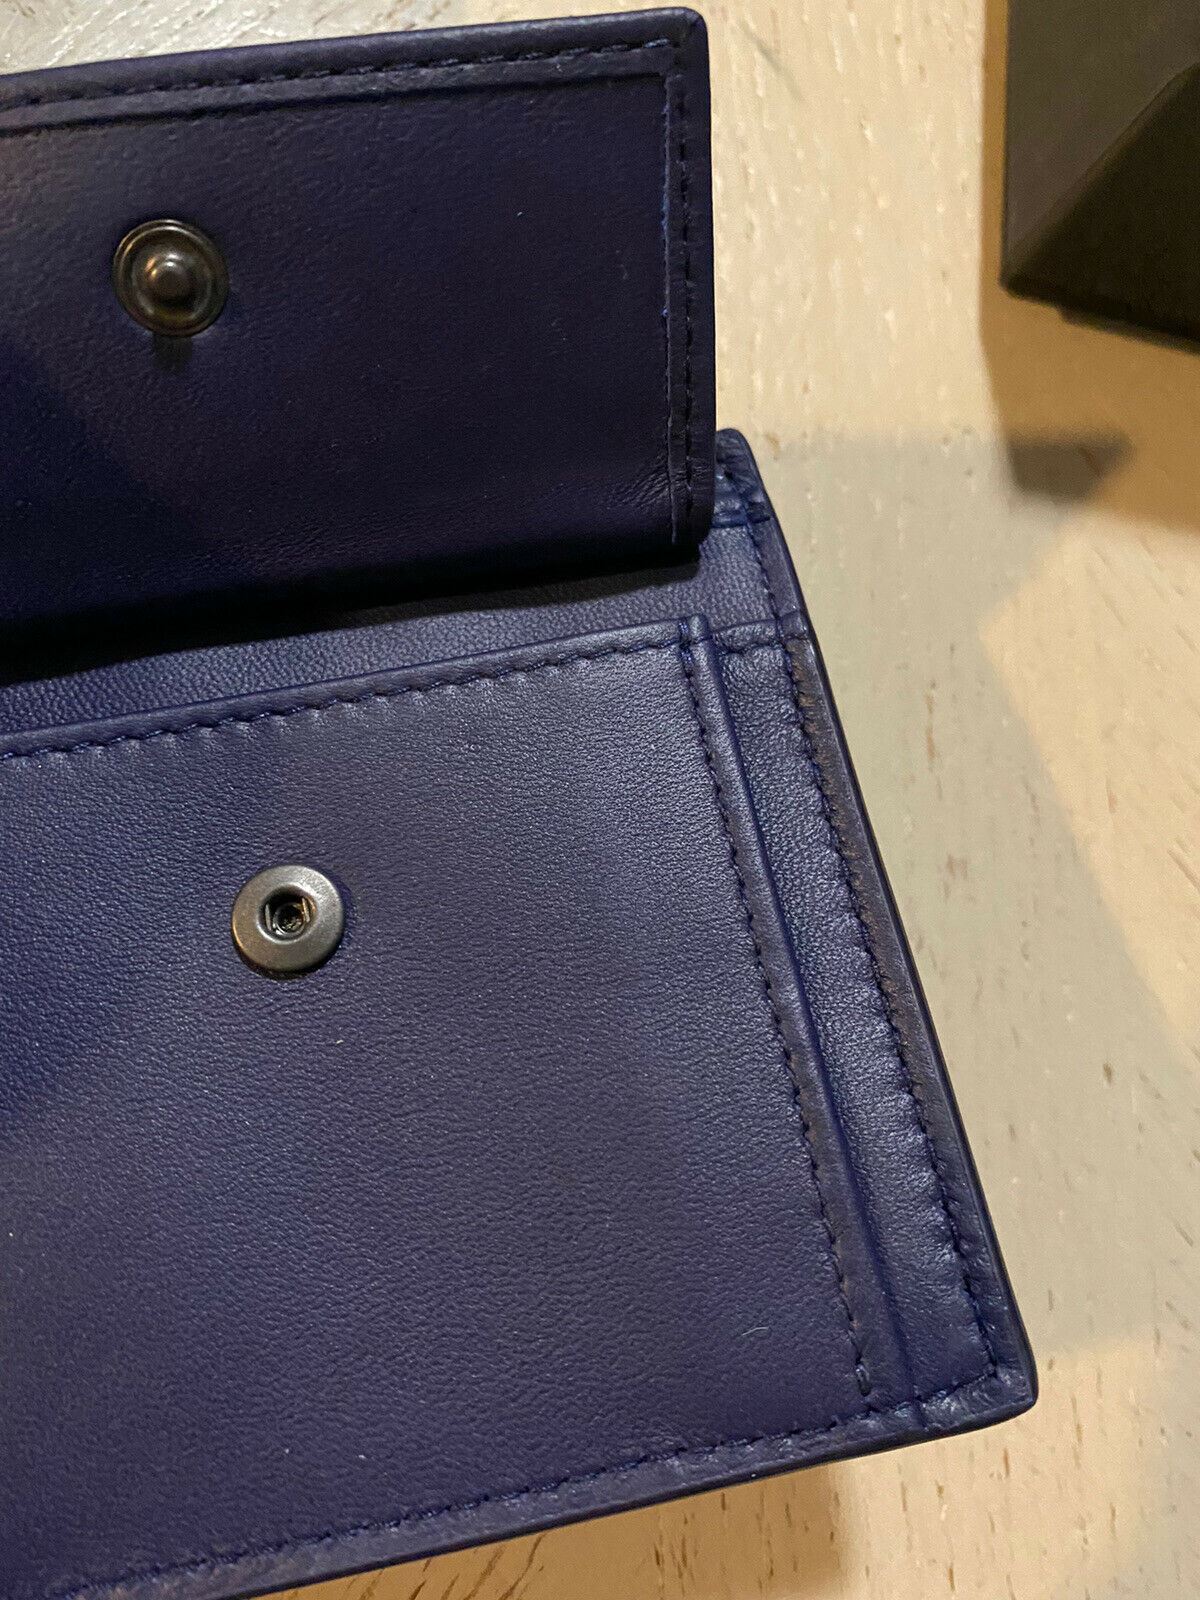 Новый мужской кошелек Bottega Veneta сланцевого цвета Atlantic Blue 148324 Италия